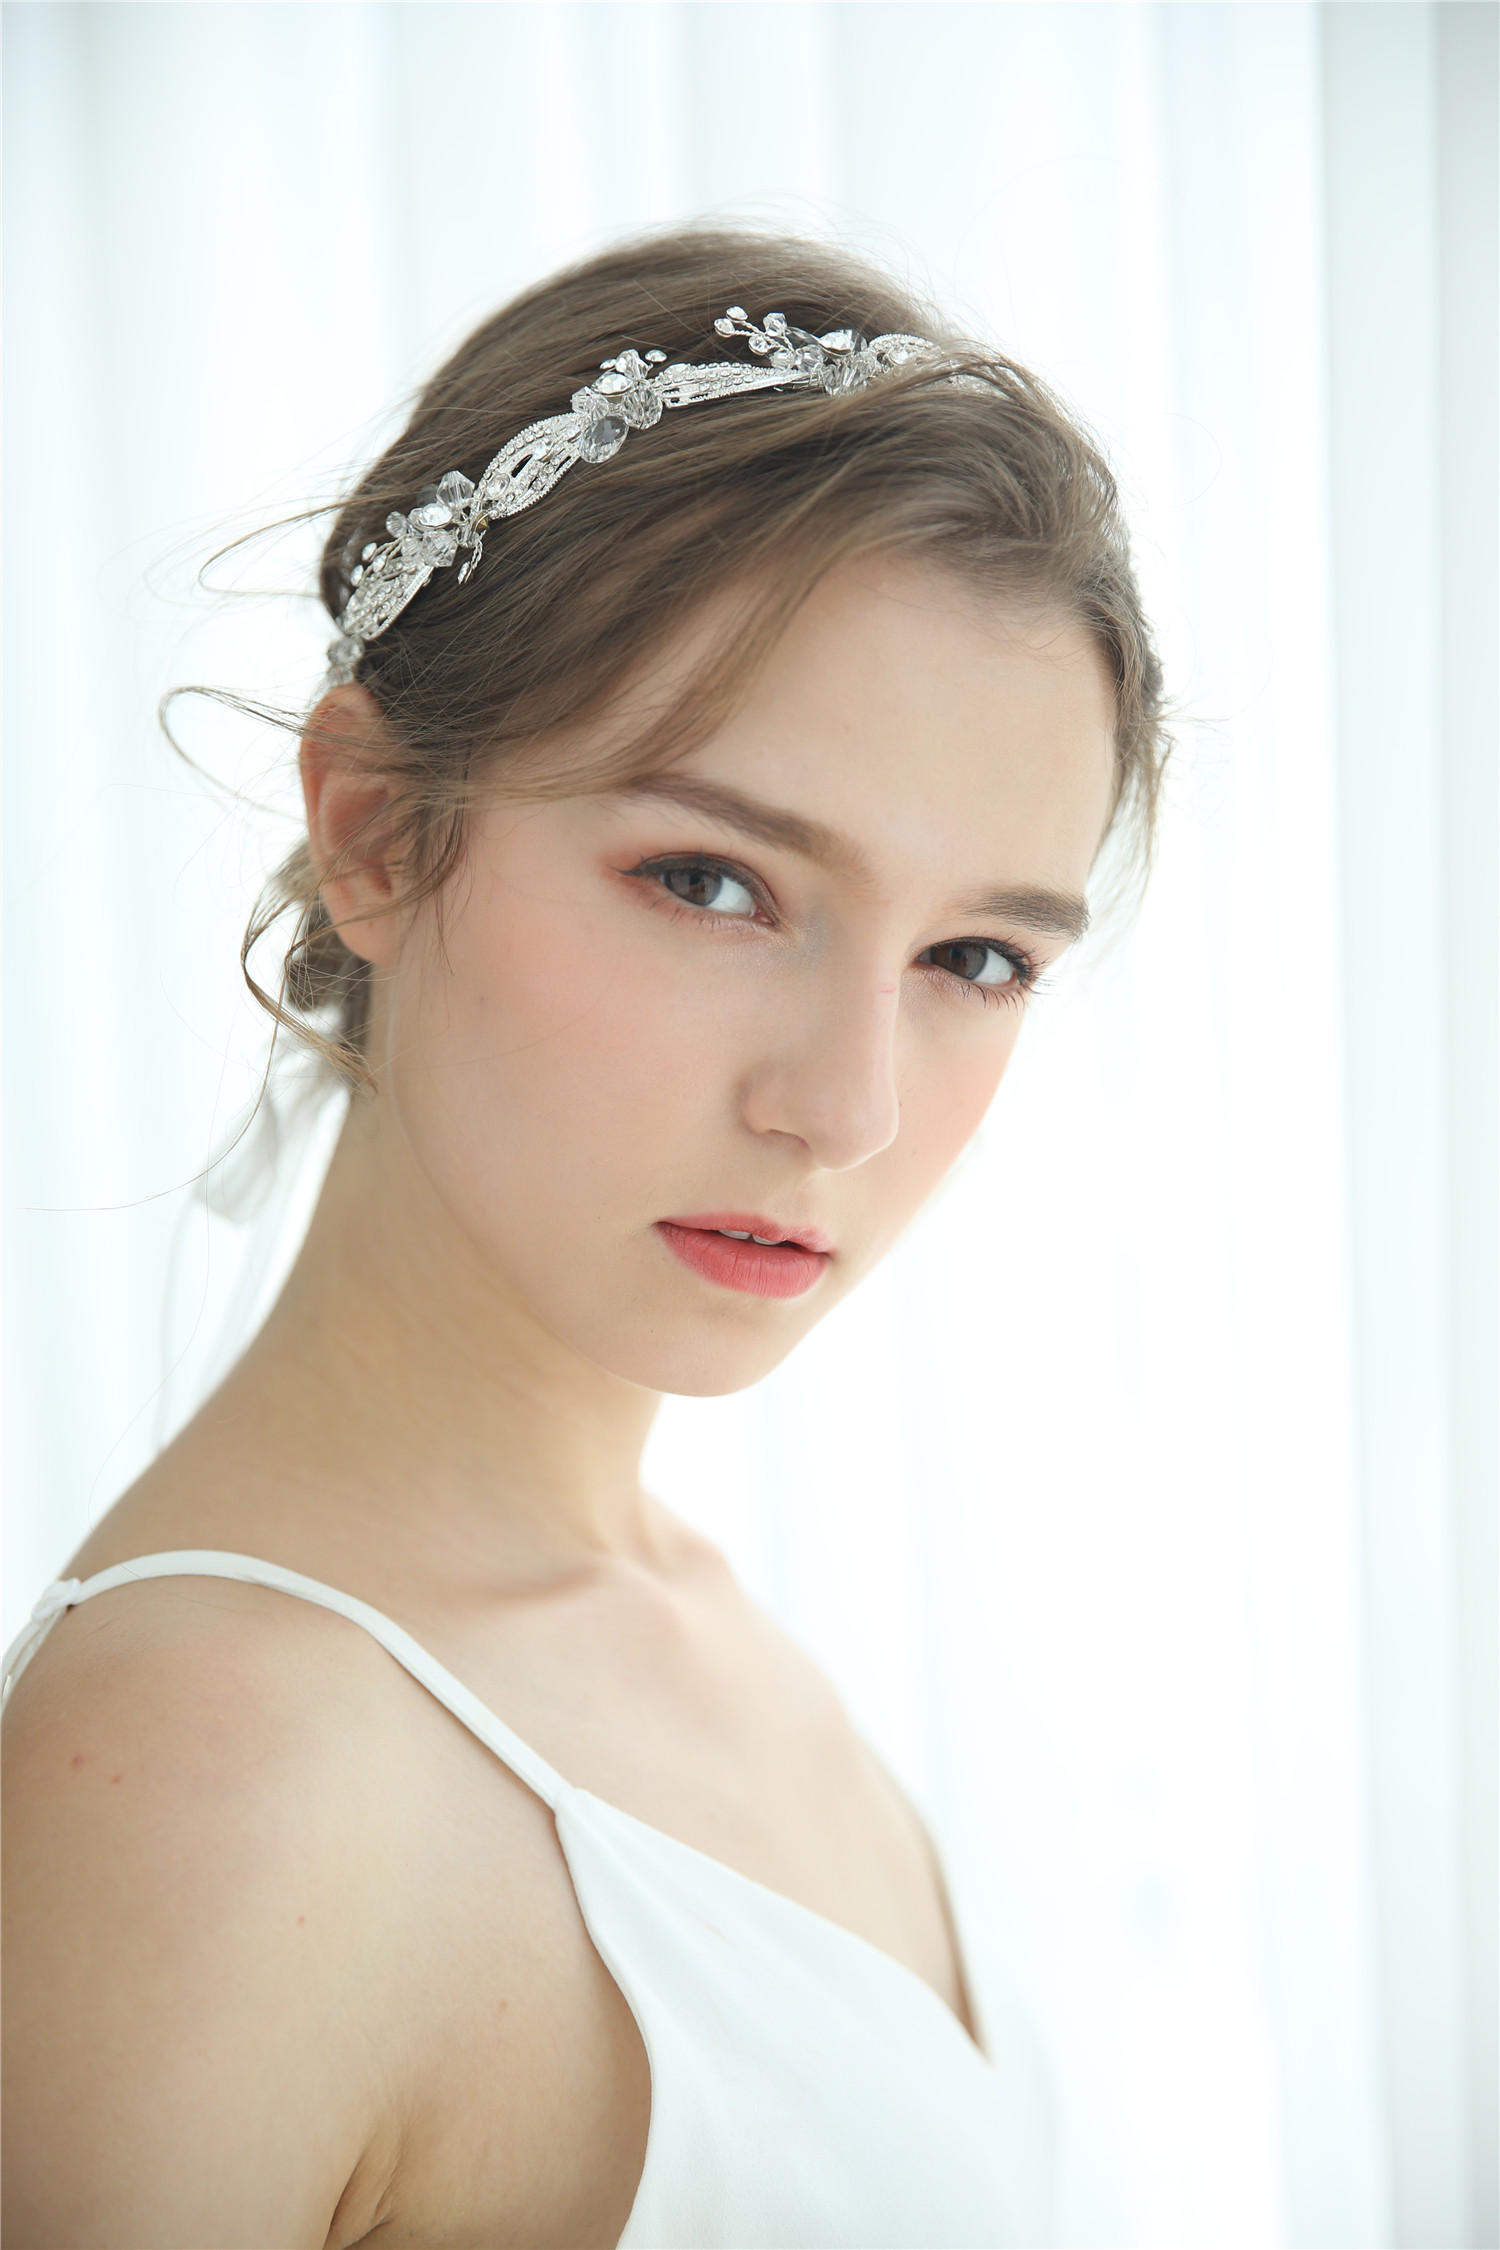 Headdress Flower Pretty Elegant Wedding Bridal Crystal Hairband Hair Accessories For Women